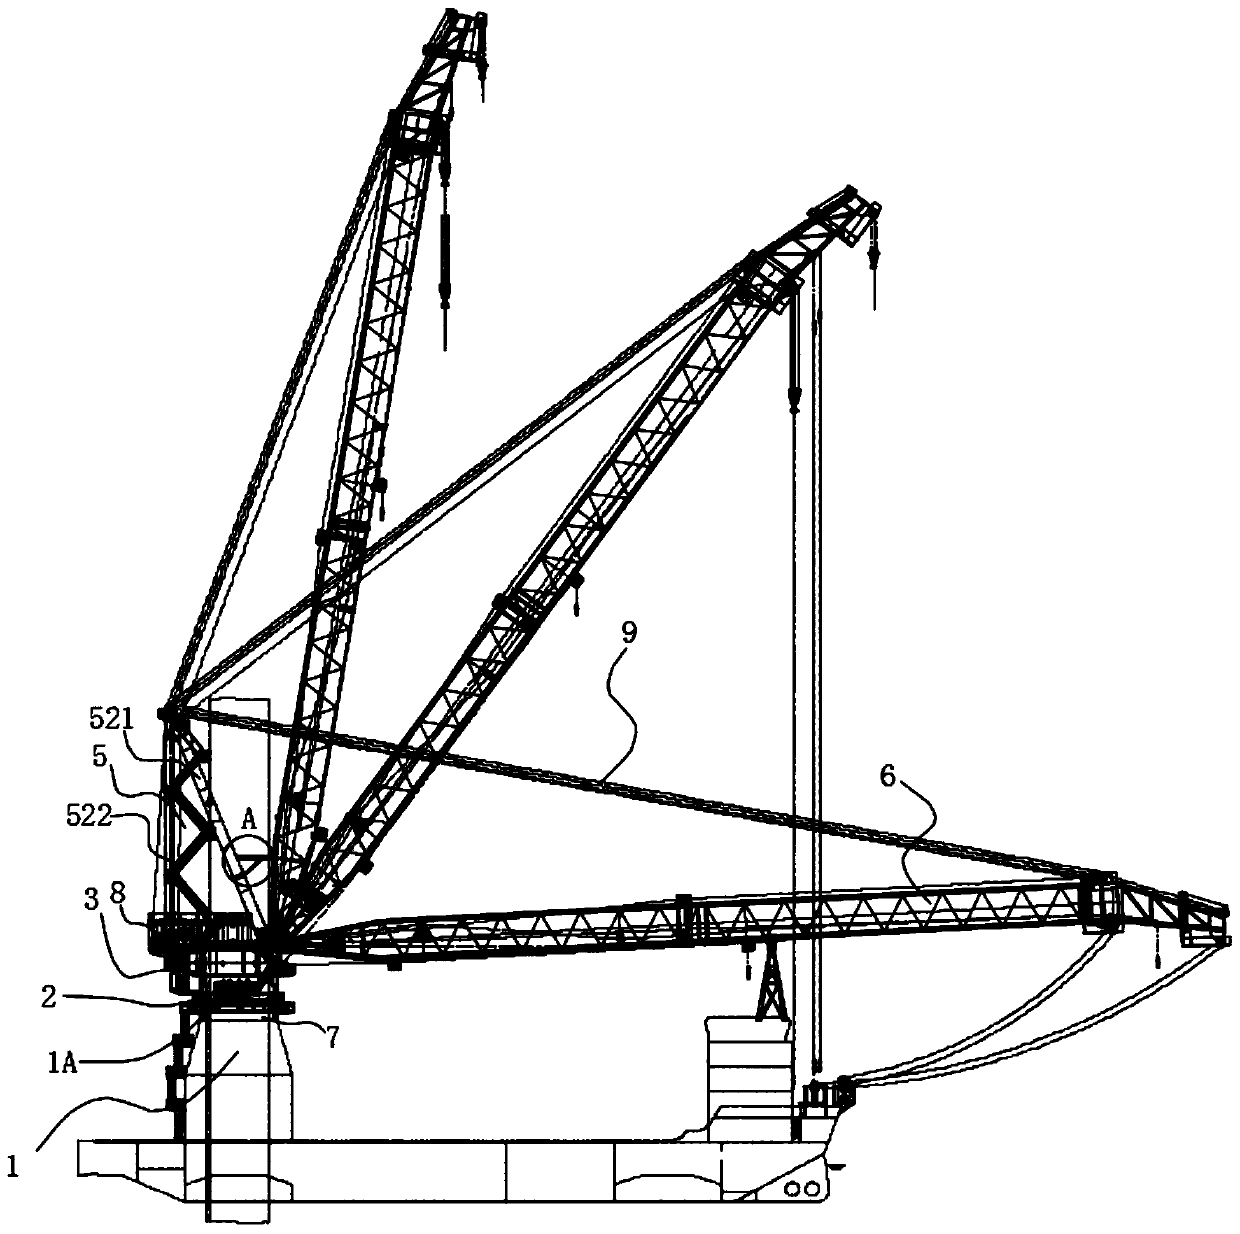 A crane based on hydraulic system